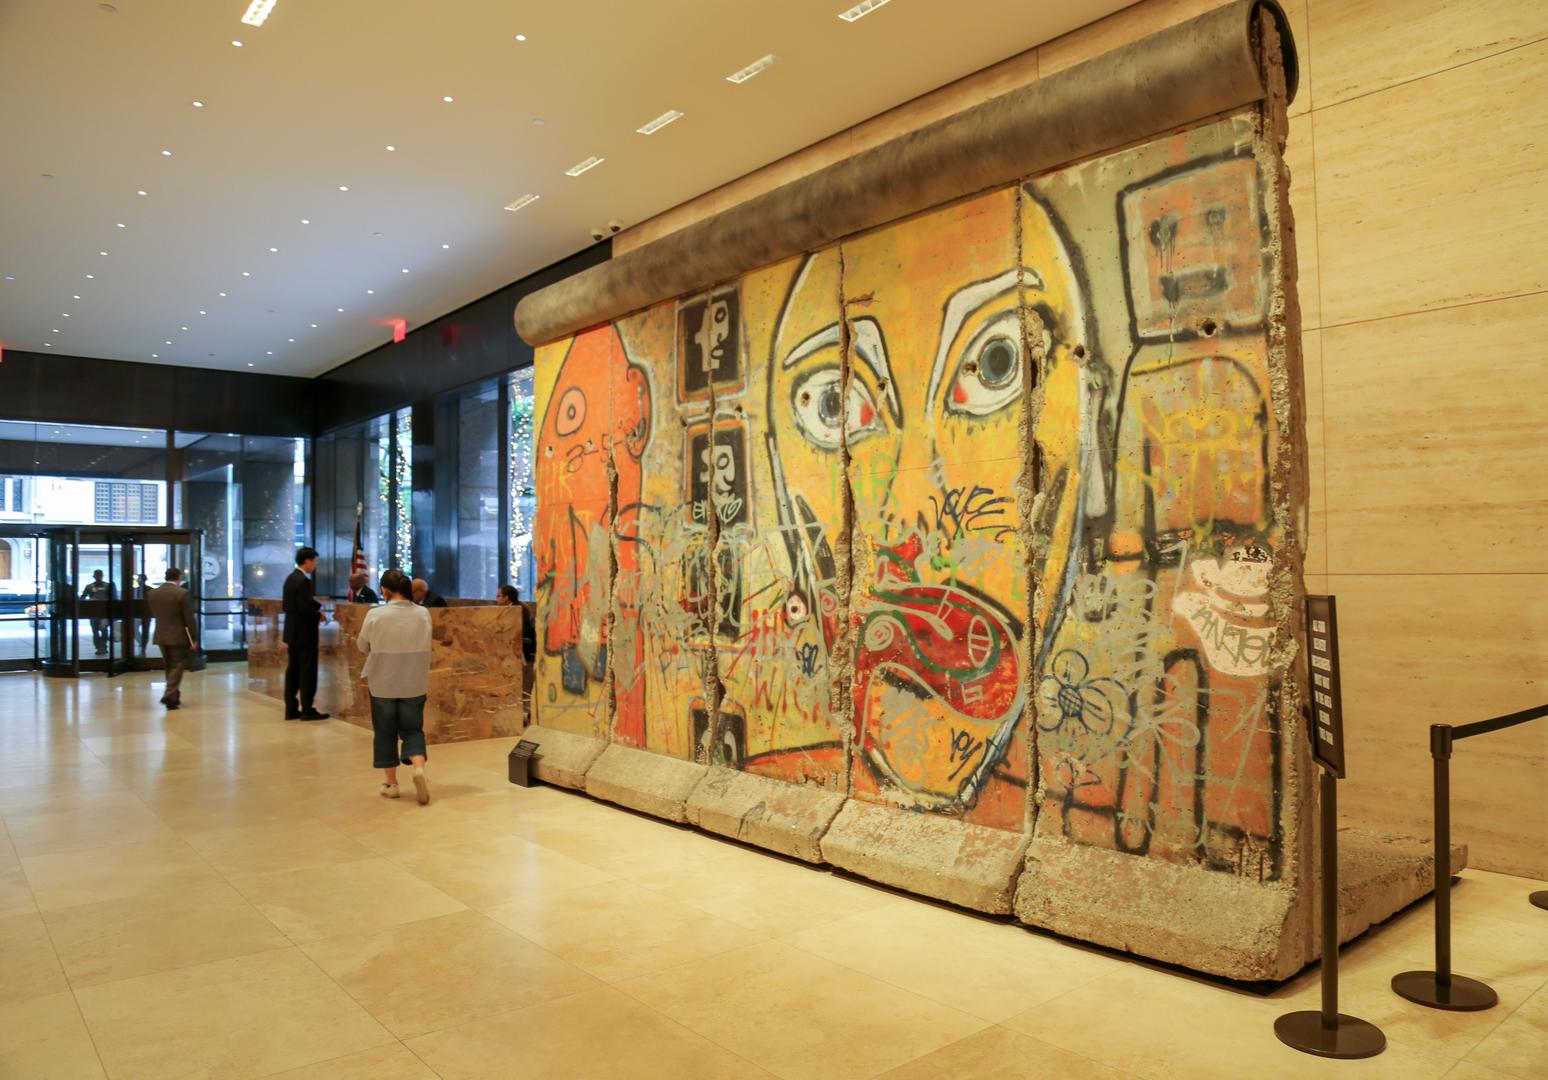 New York ima 5 dijelova Berlinskog zida i svi su vrijedne umjetnine